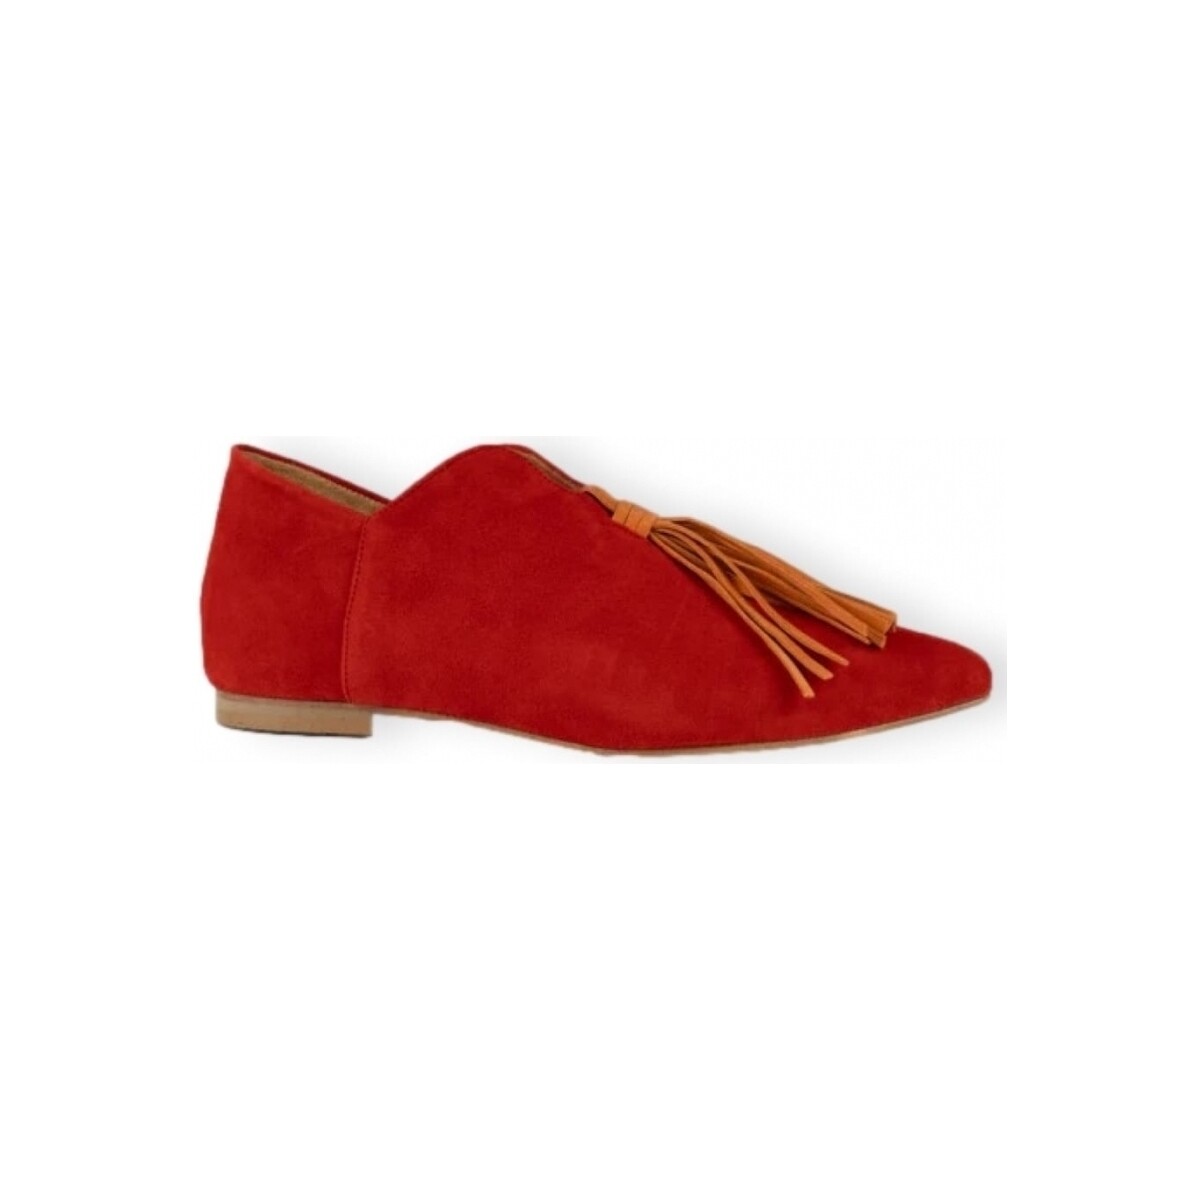 Zapatos Mujer Bailarinas-manoletinas Maray Blossom - Sunny Red Rojo